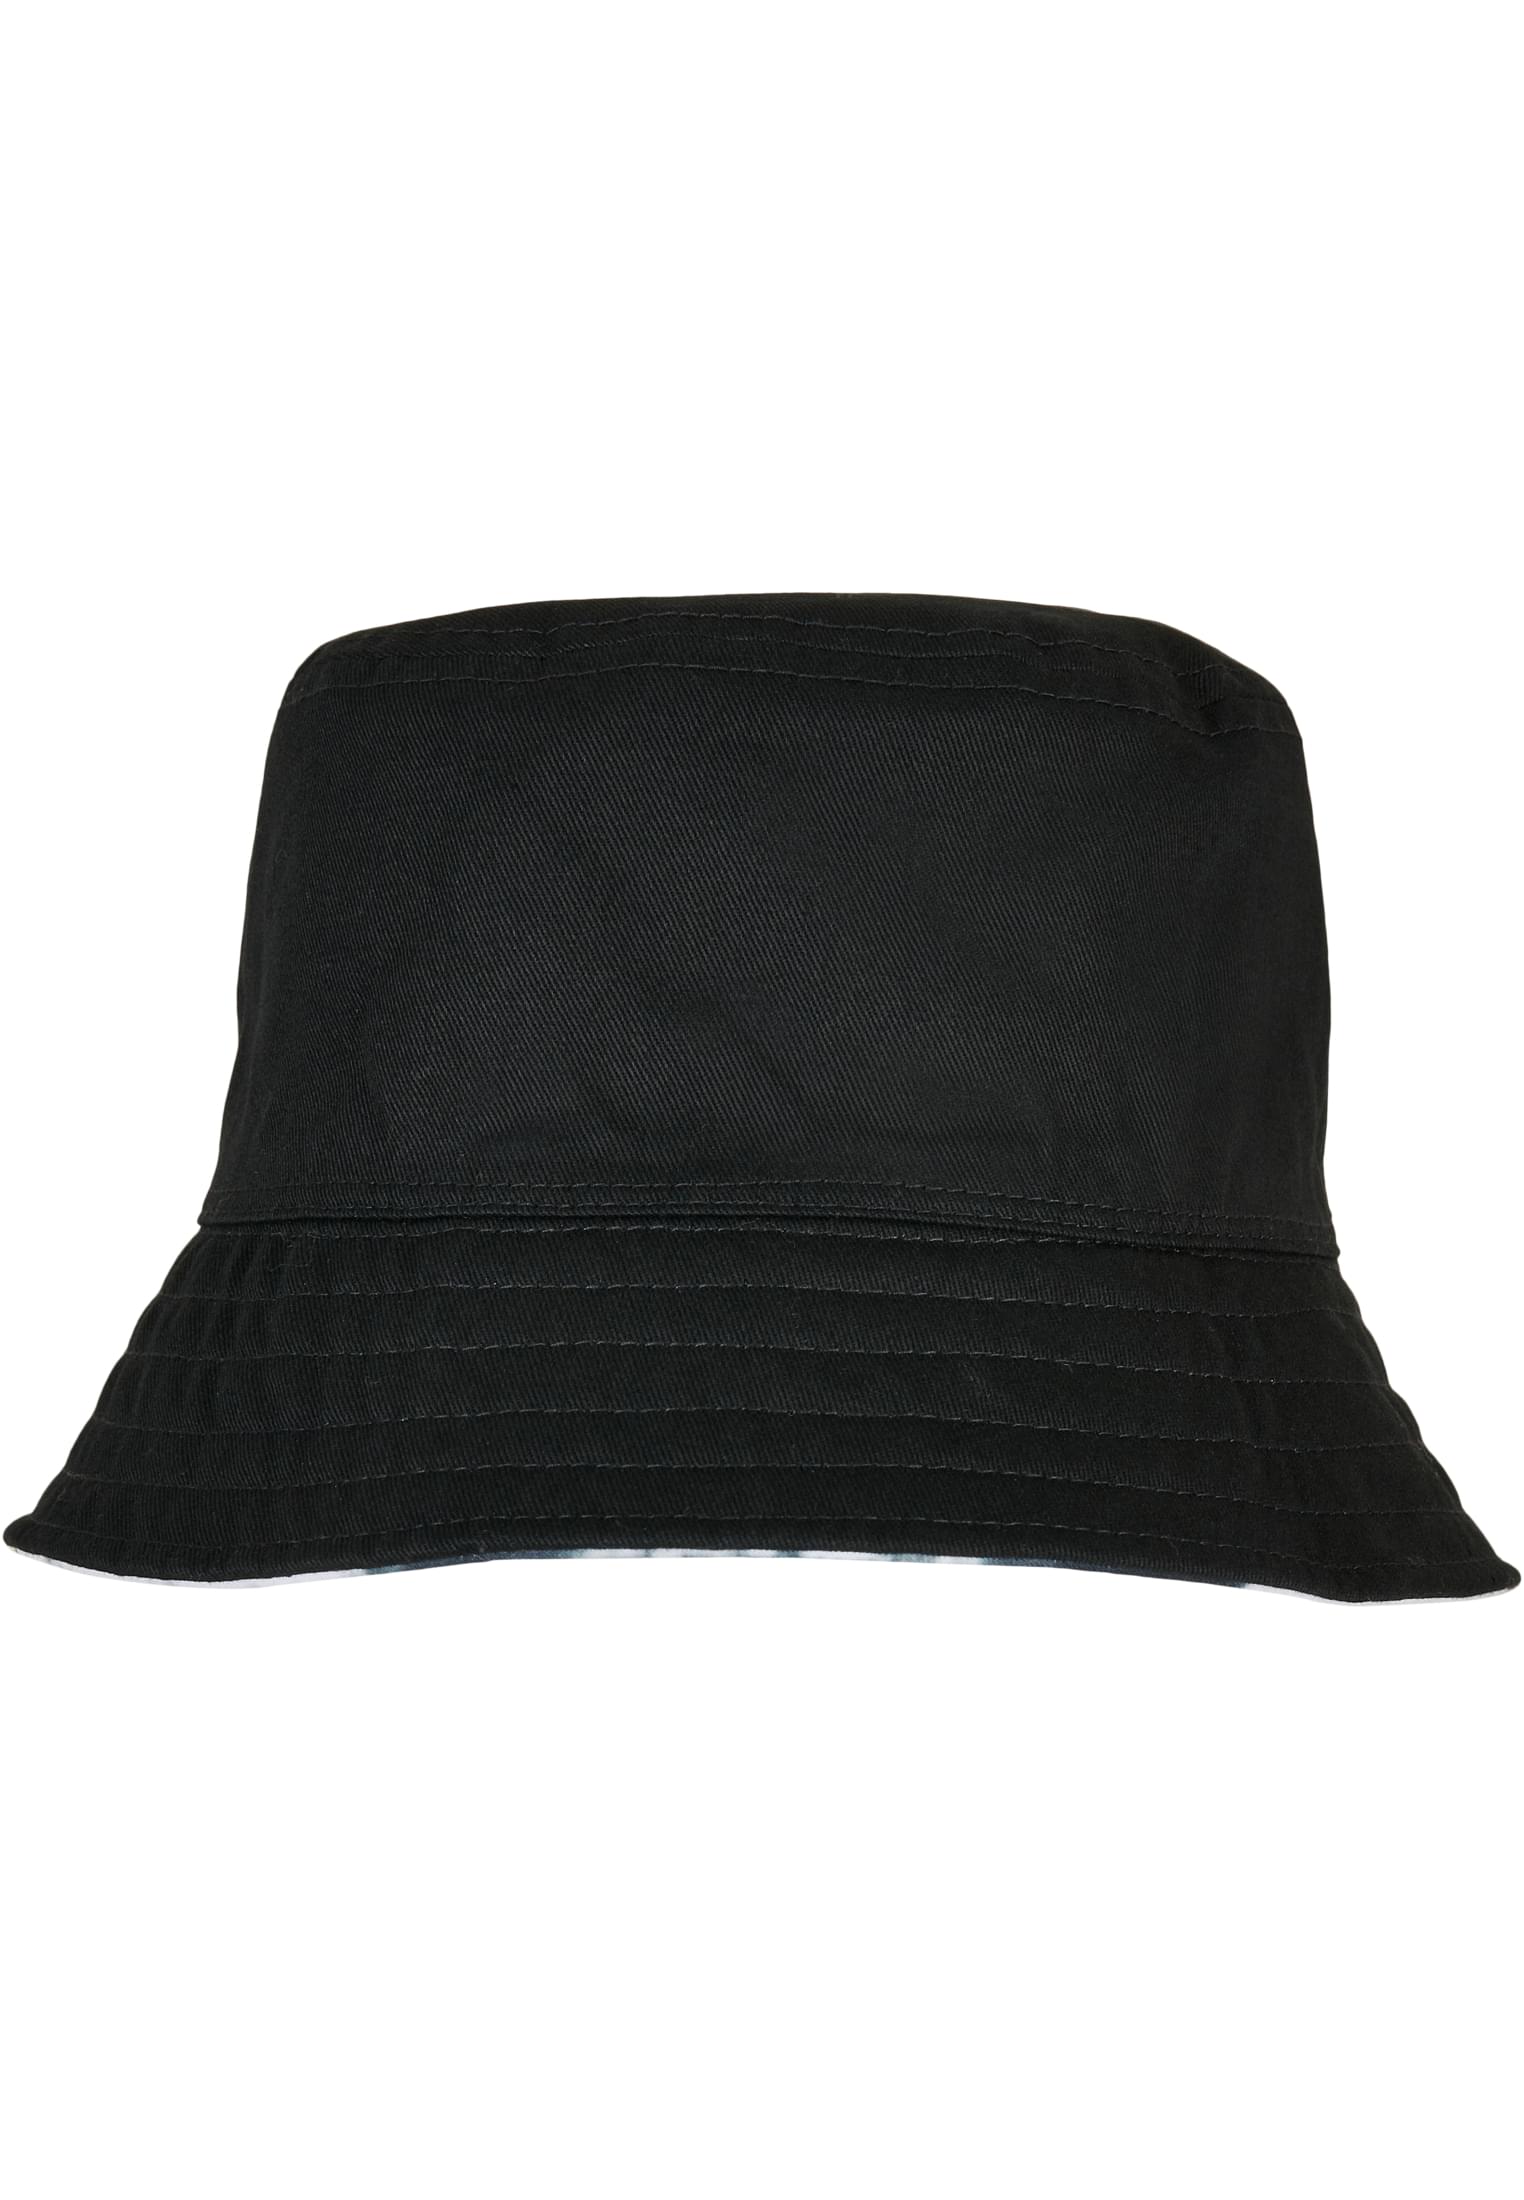 Bucket Hat Batik Dye Reversible Bucket Hat in Farbe black/white